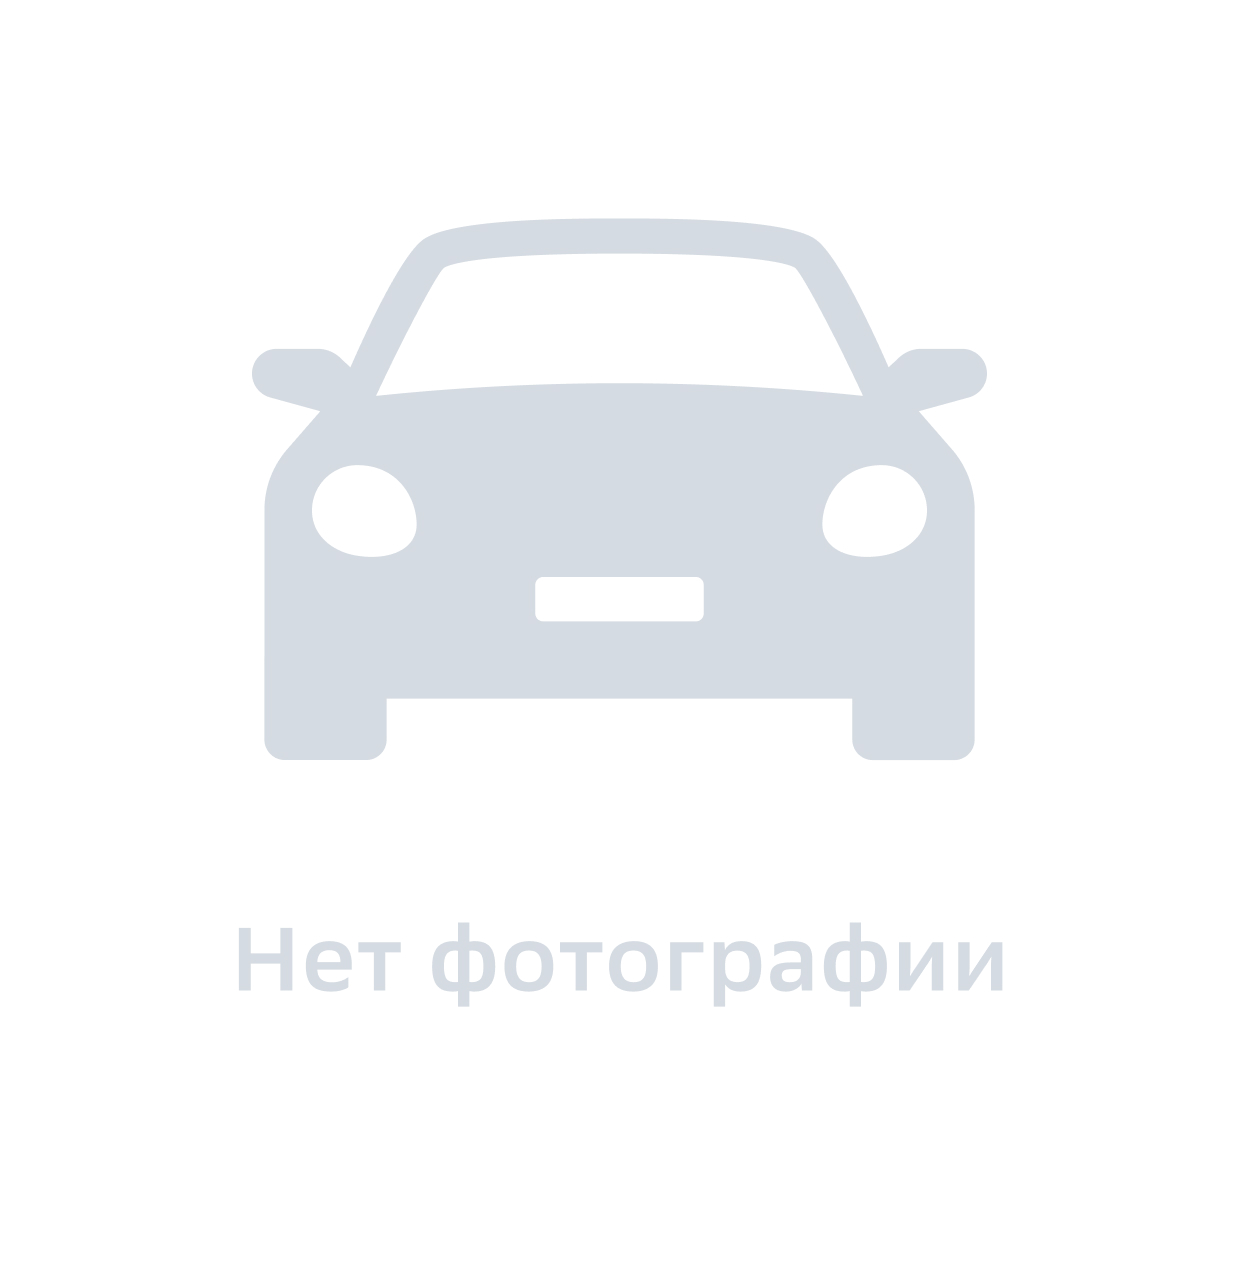 Присадка в топливо Peugeot-Citroen 1607410780 0.3 л - купить в Мой гараж, цена на Мегамаркет